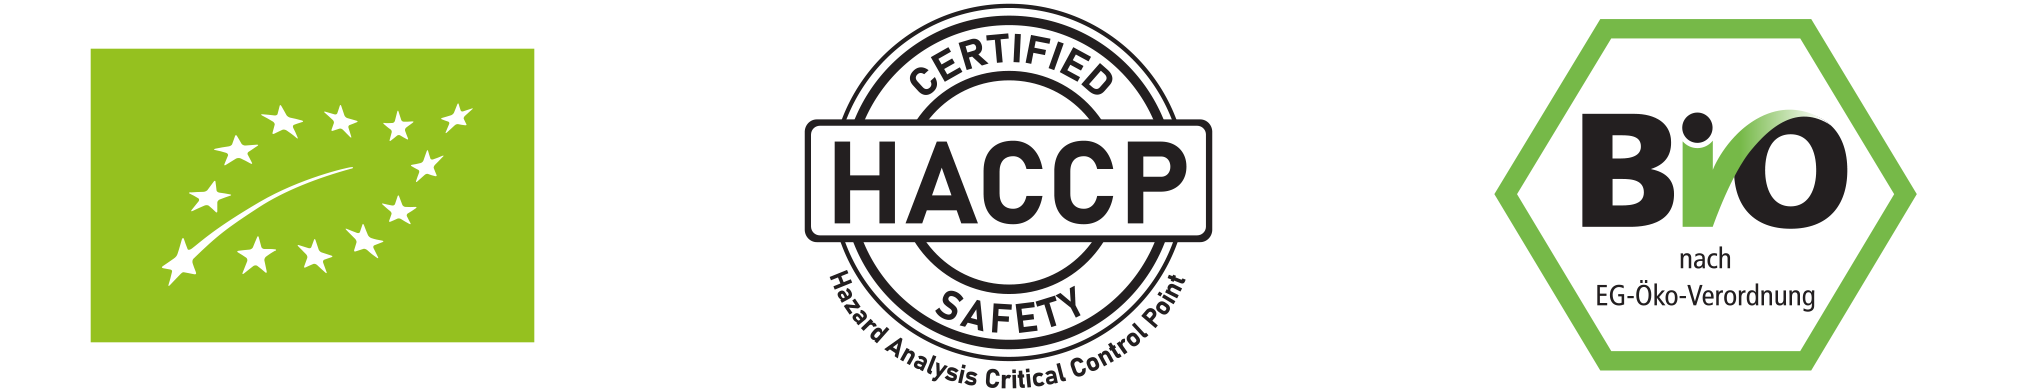 BIO & HAACP Zertifiziert